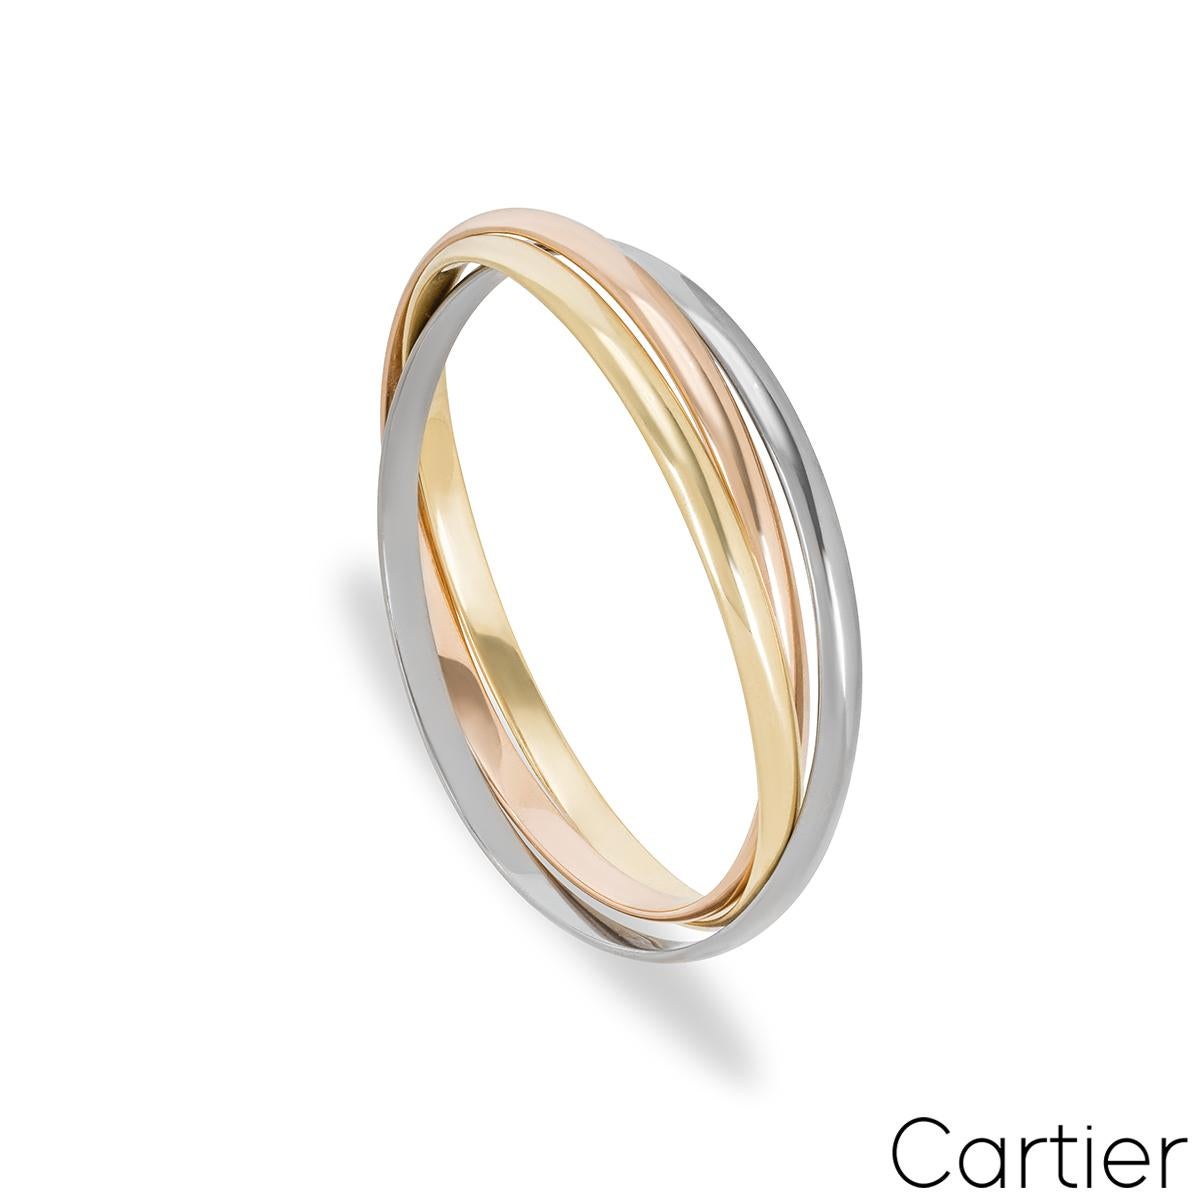 Un bracelet Cartier tricolore emblématique en 18k de la collection Trinity De Cartier. Le bracelet est composé de trois bandes entrelacées en or blanc, rose et jaune 18k de 4,5 mm. Le bracelet convient à un poignet de 18 cm maximum et pèse 56,87